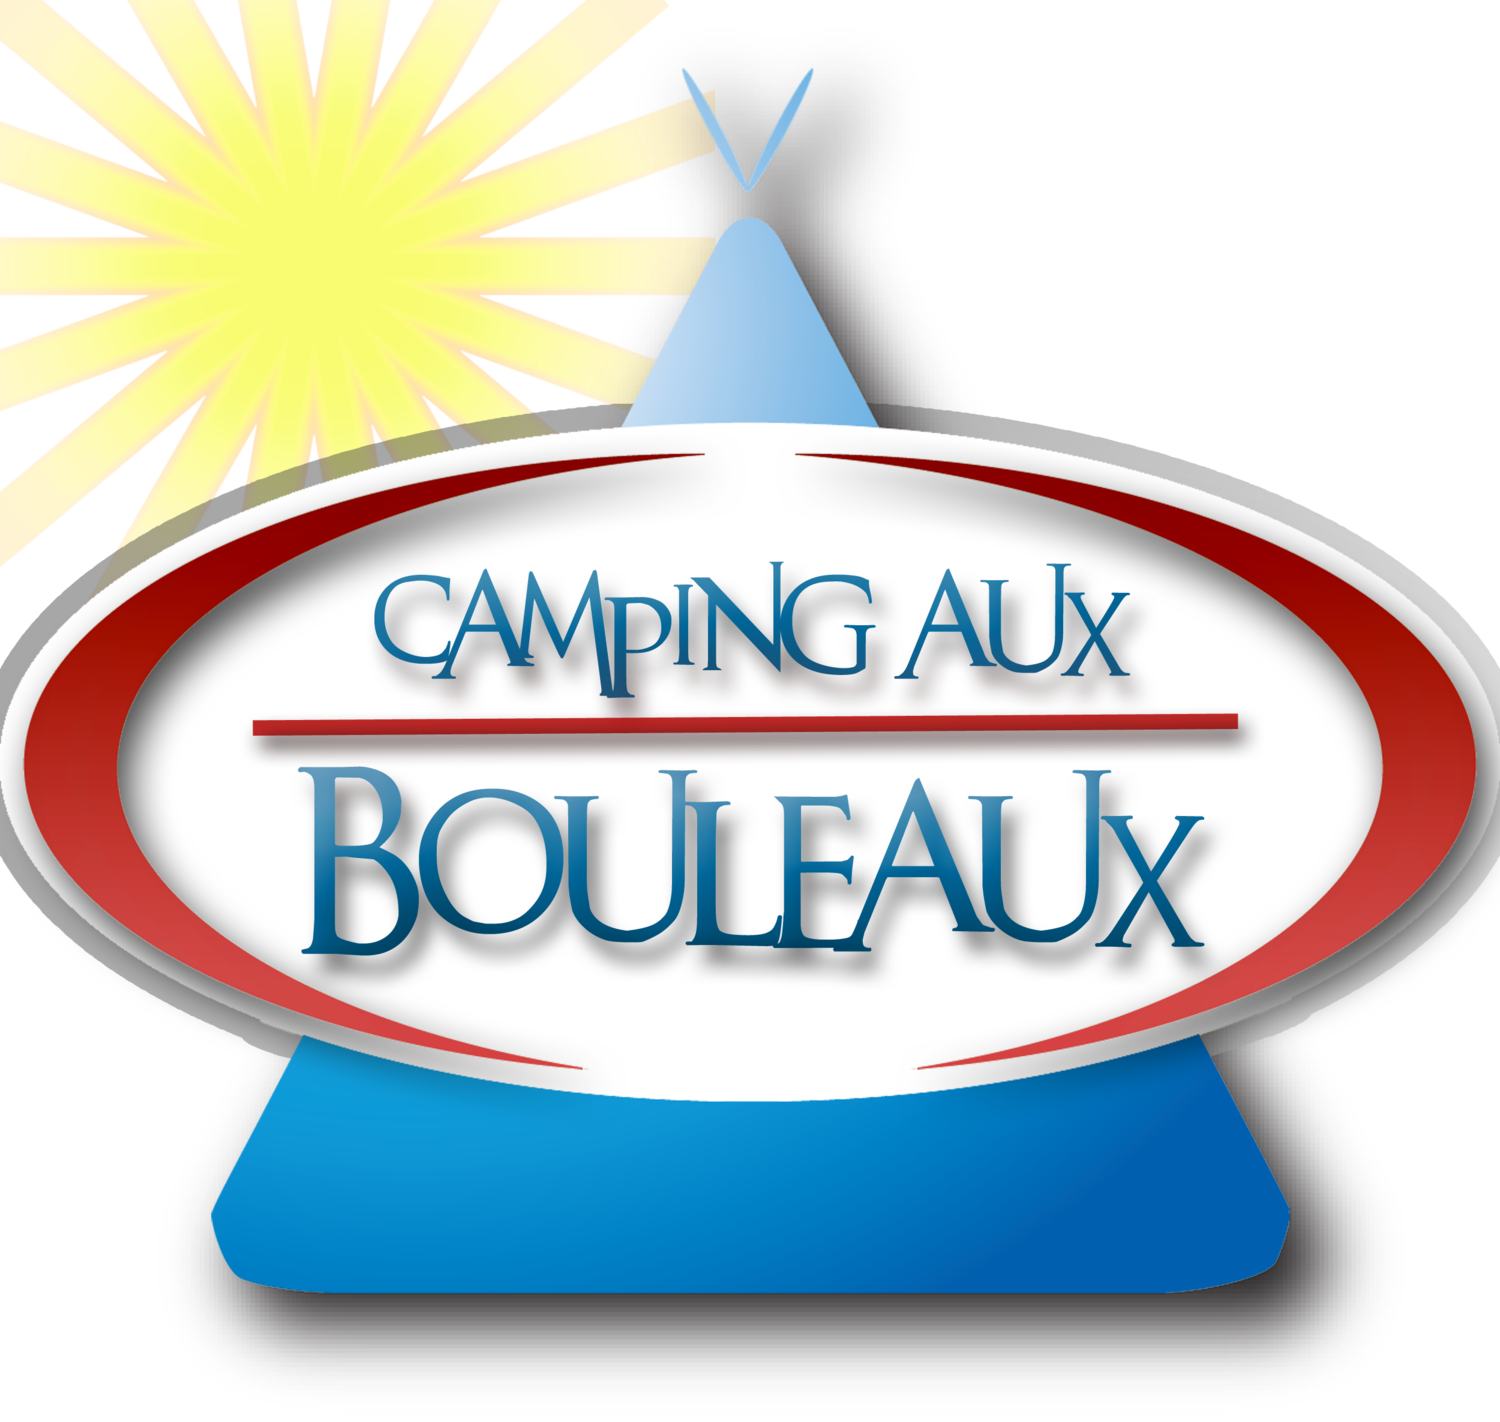 Camping Aux Bouleaux